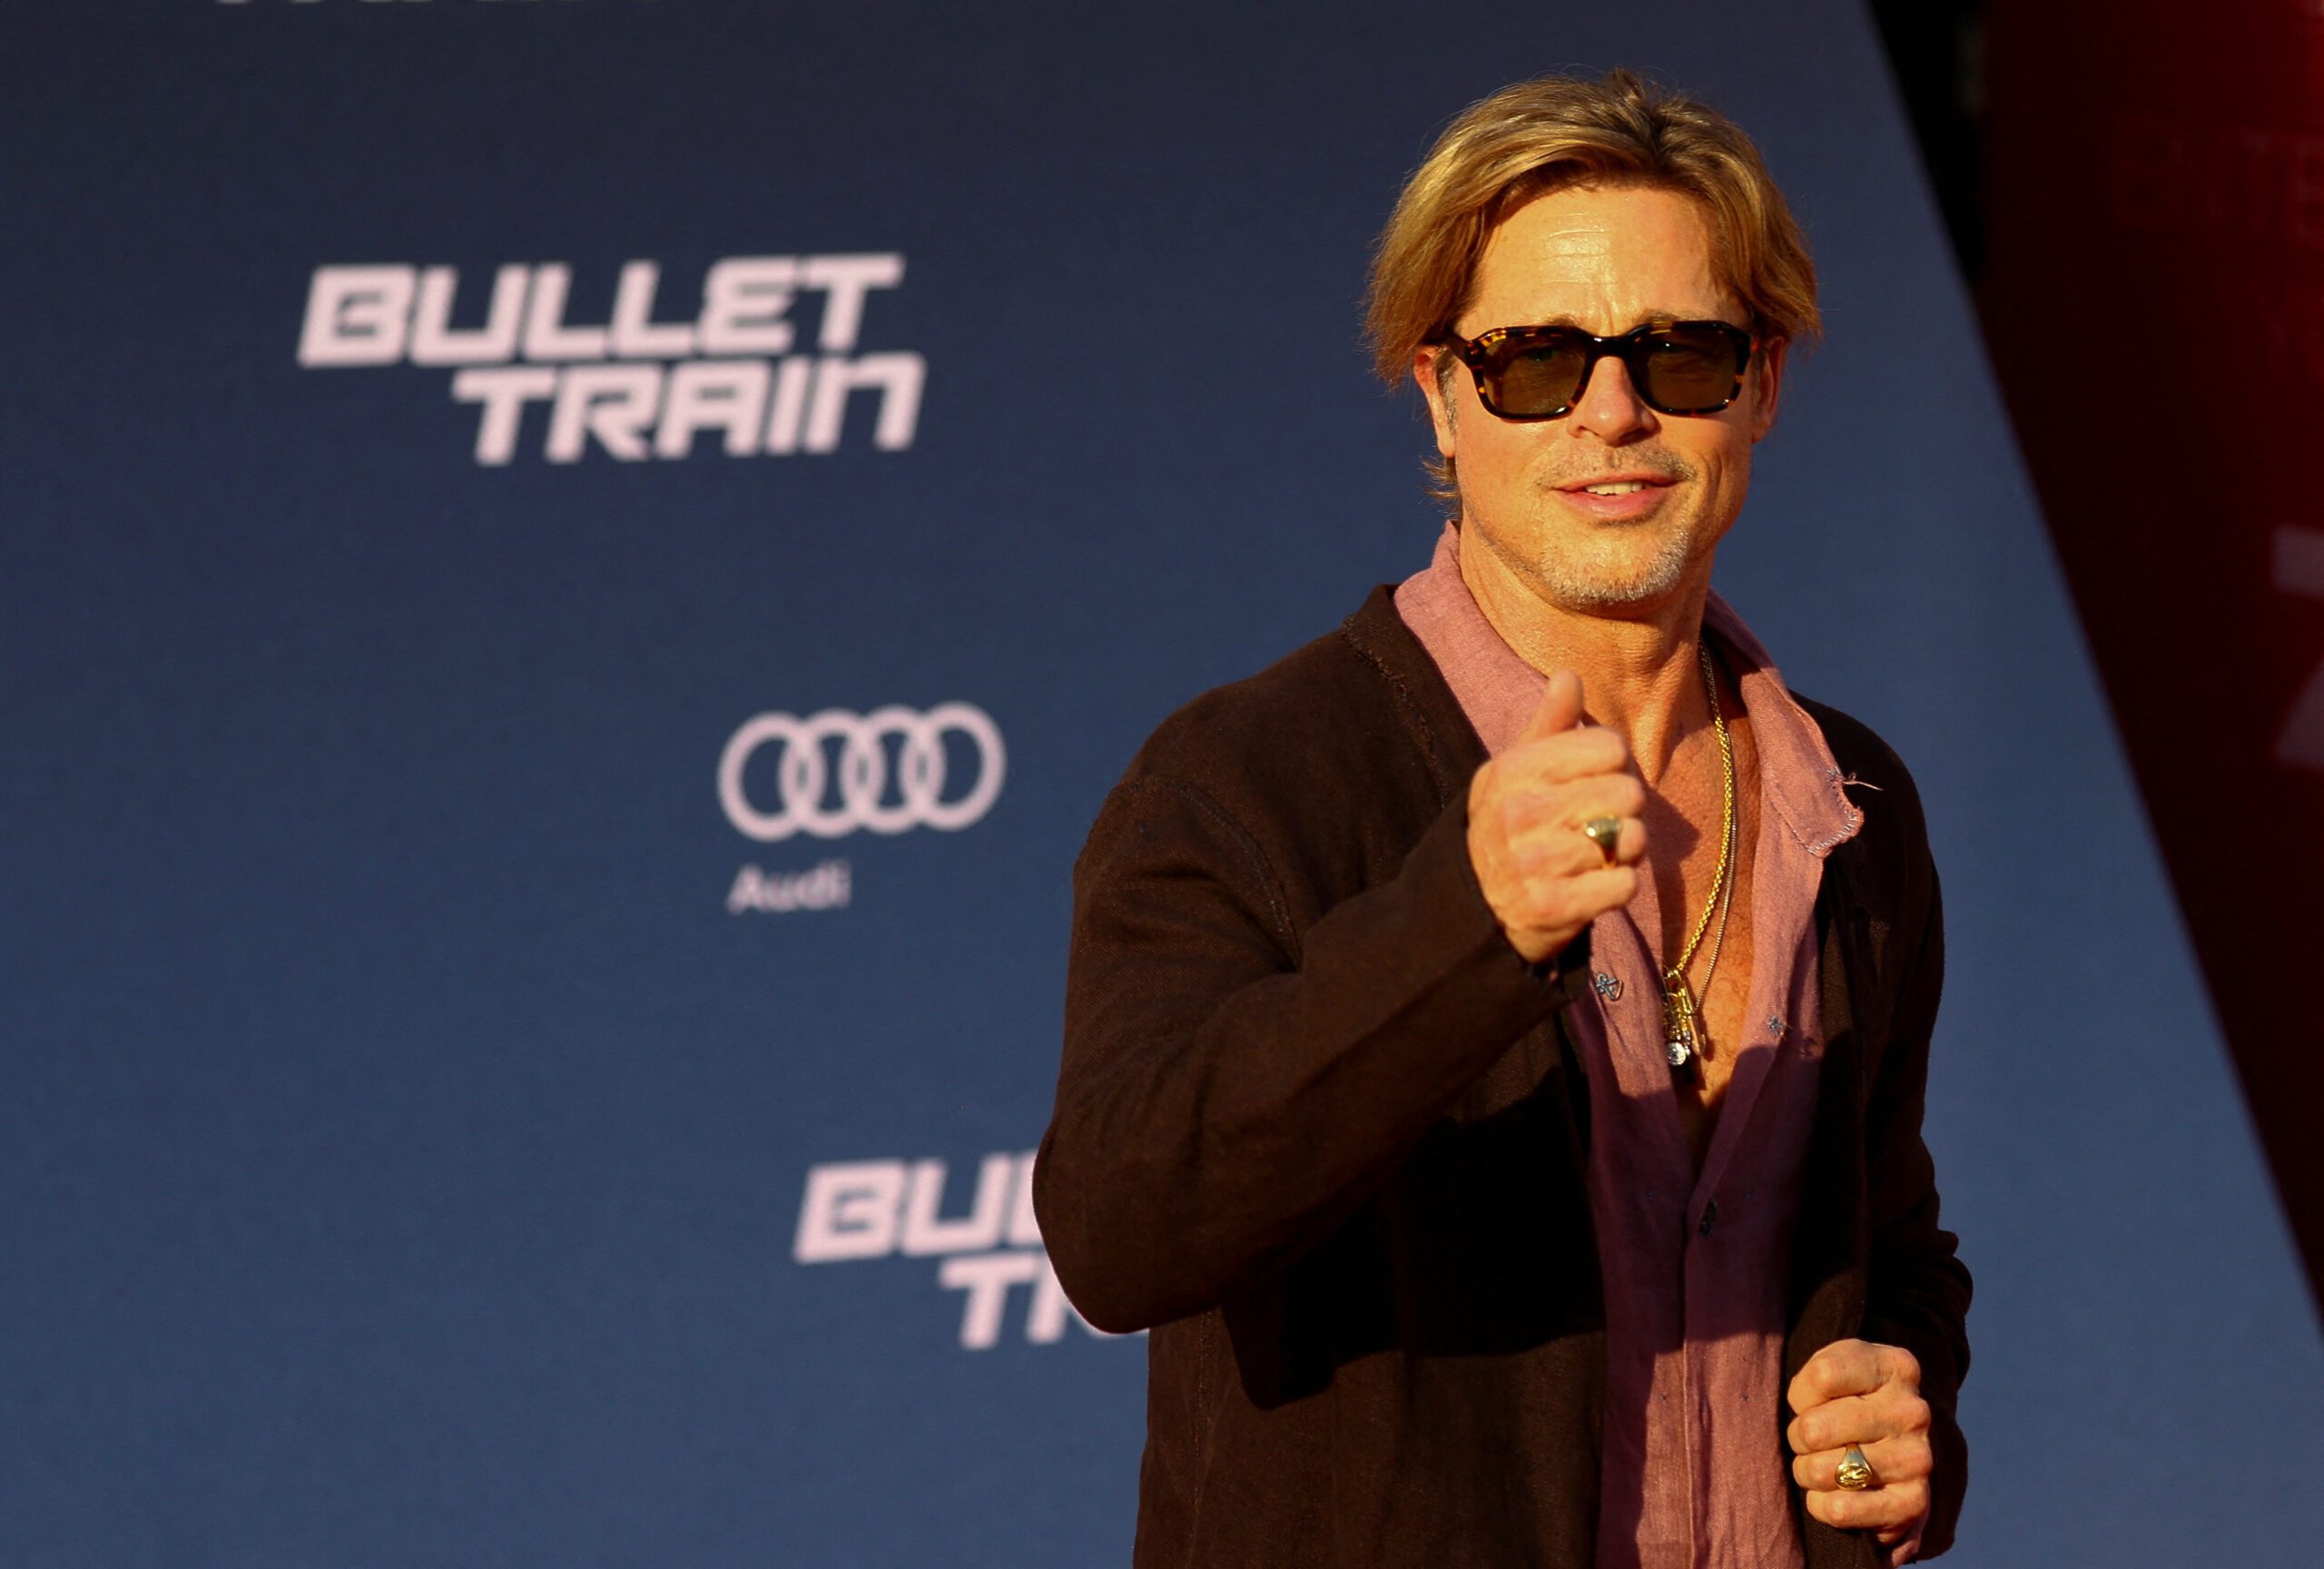 Brad Pitt battles assassins in new action thriller ‘Bullet Train’